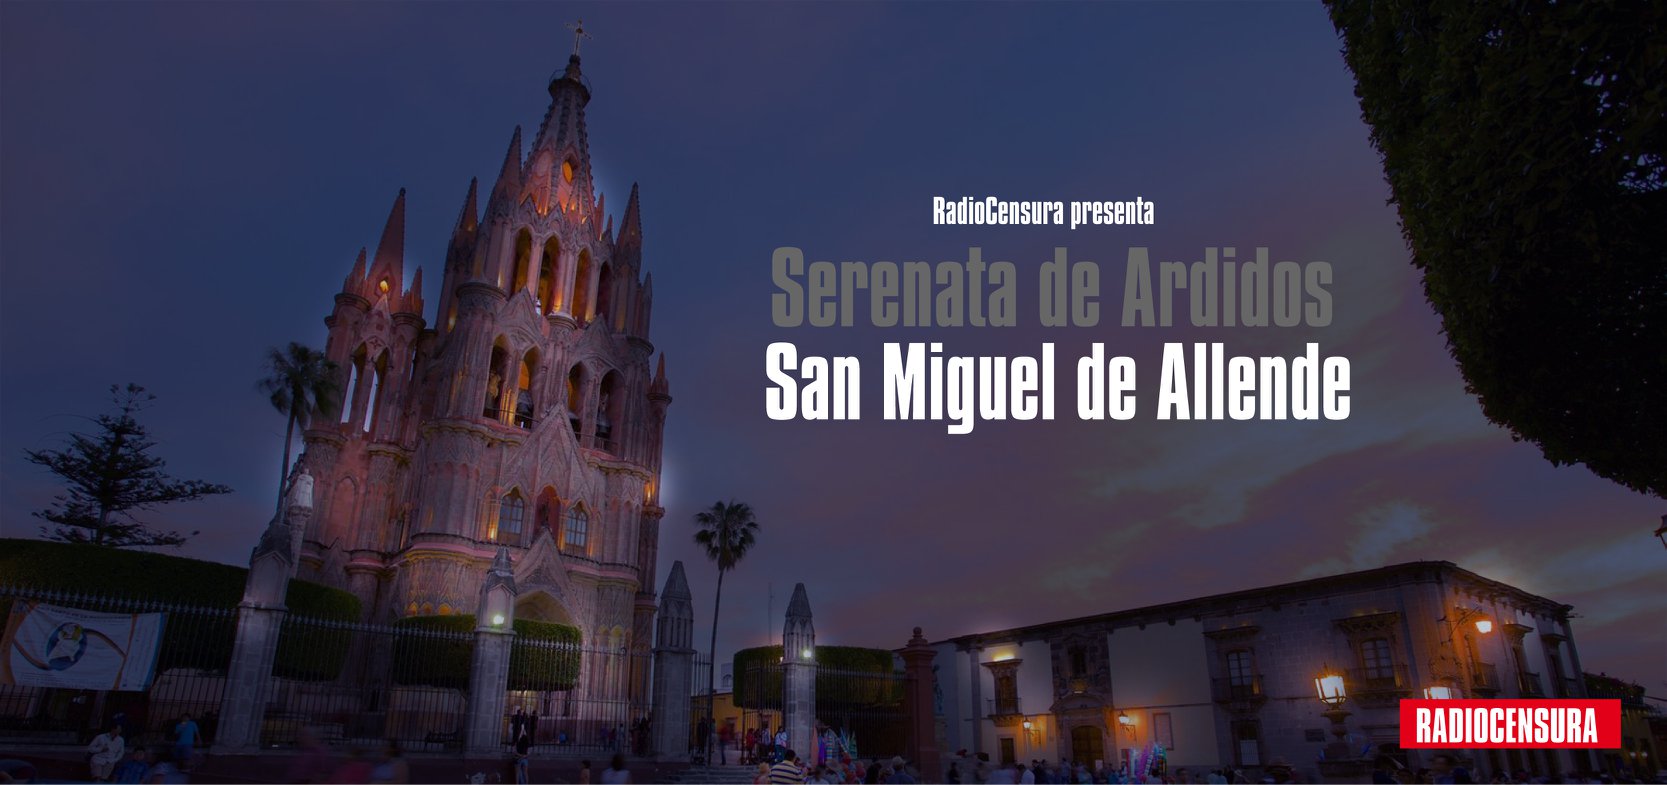 Serenata de Ardidos San Miguel de Allende